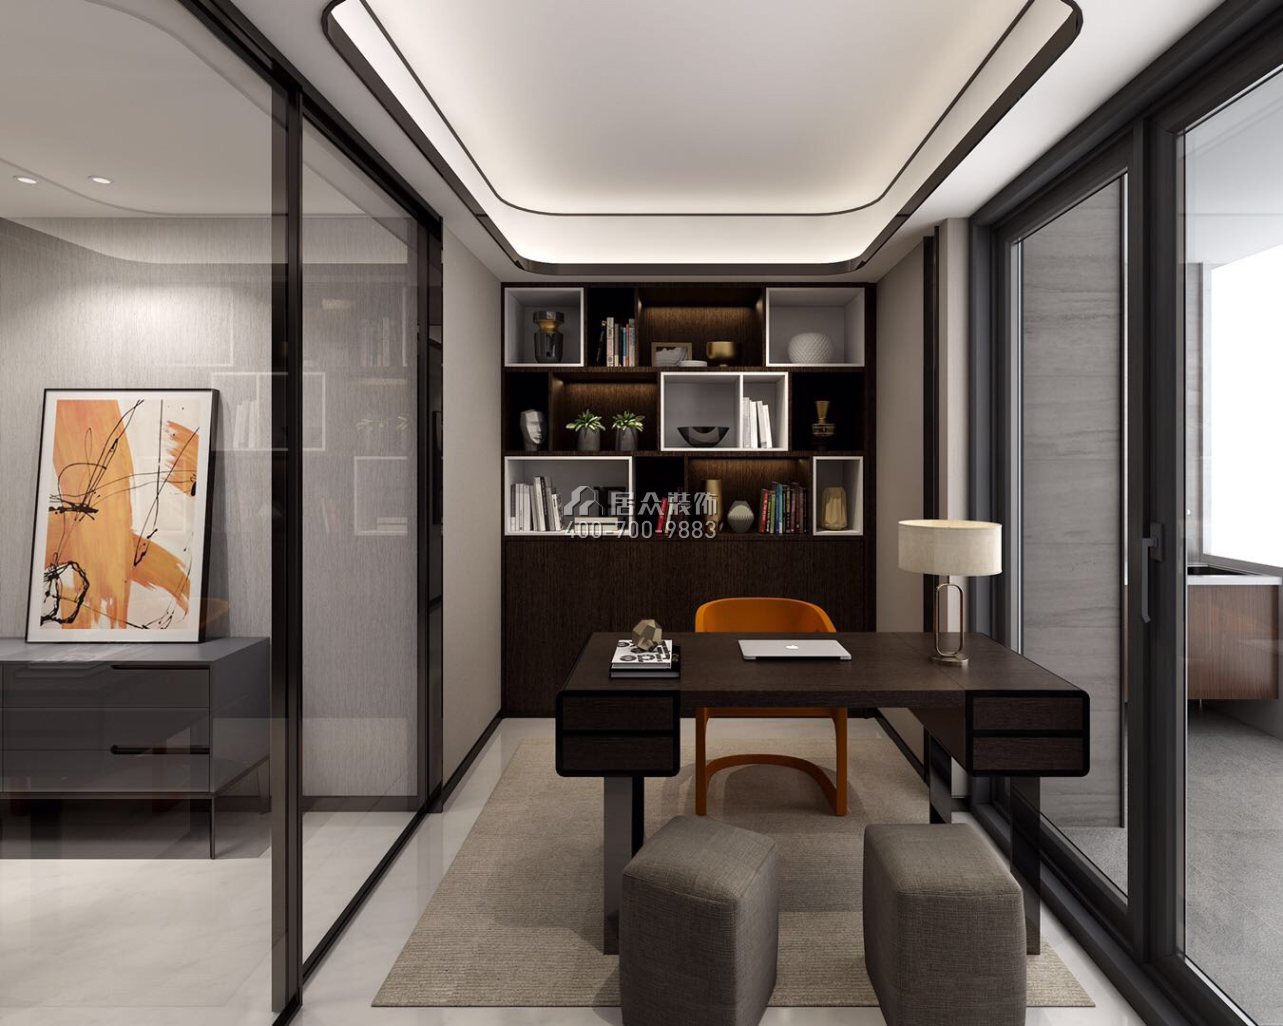 博林天瑞138平方米现代简约风格平层户型书房装修效果图